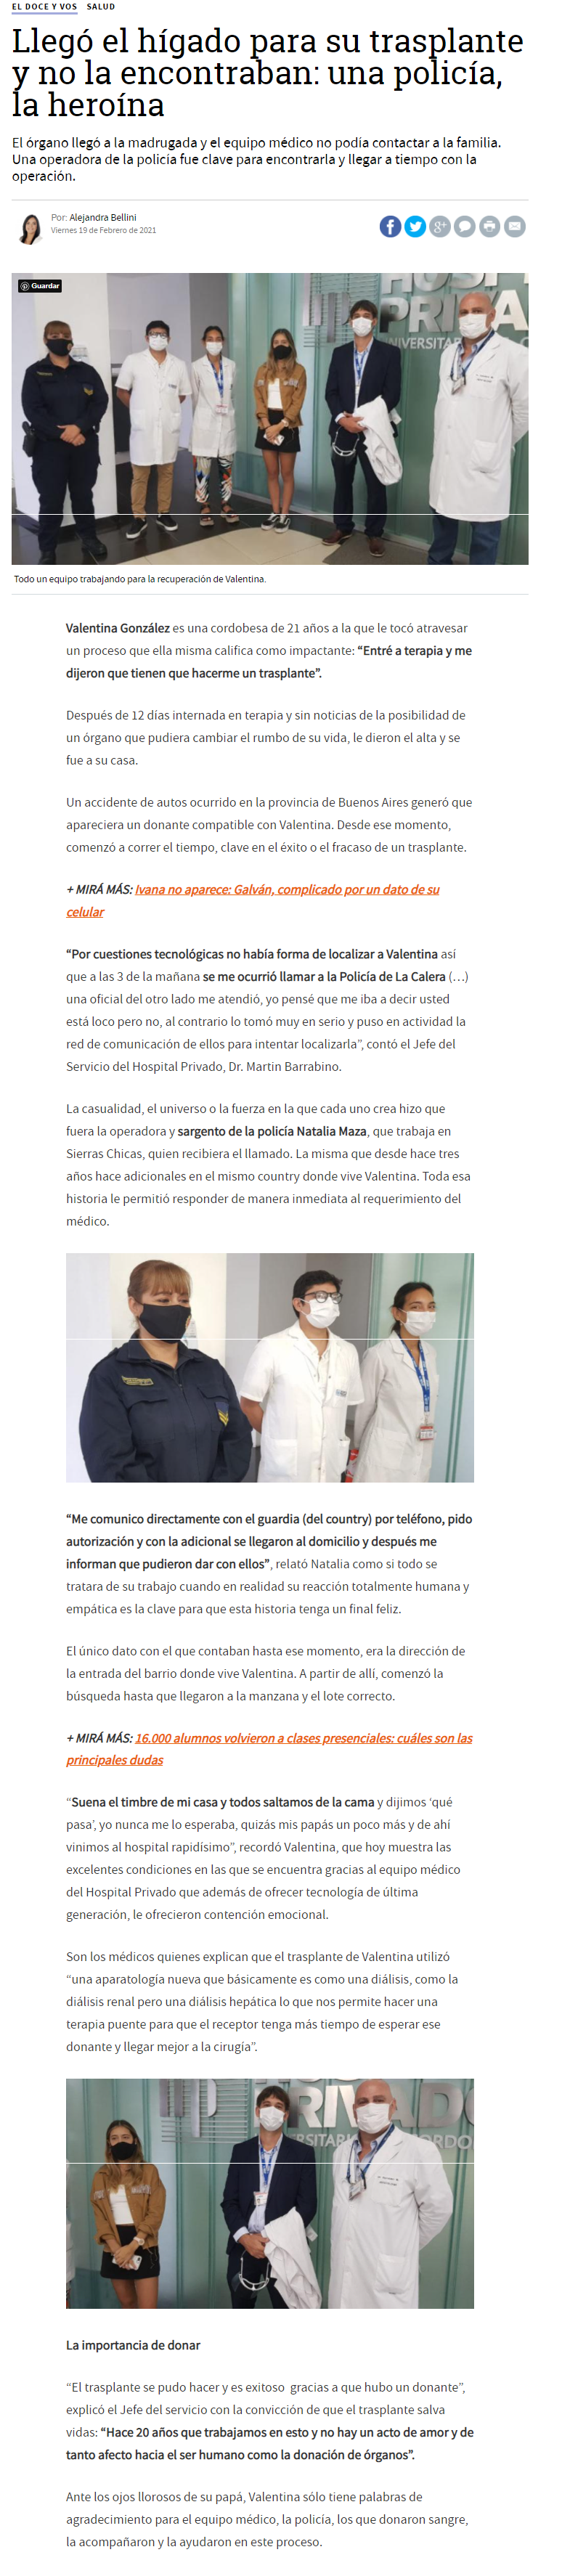 Prensa Hospital Privado Cordoba